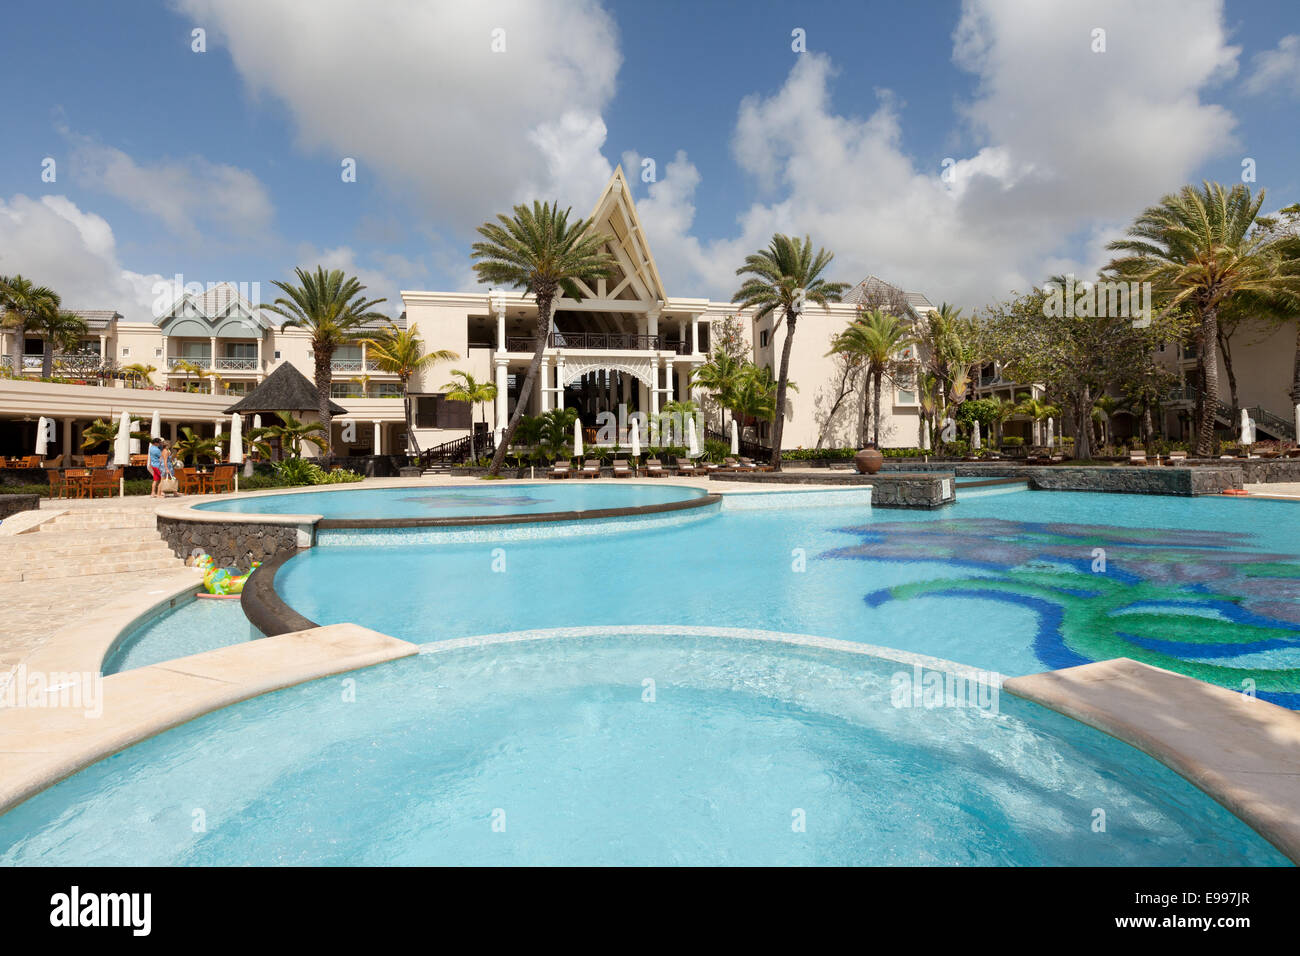 El Hotel Residencia de 5 estrellas de lujo con su piscina, Belle Mare, Mauricio Foto de stock